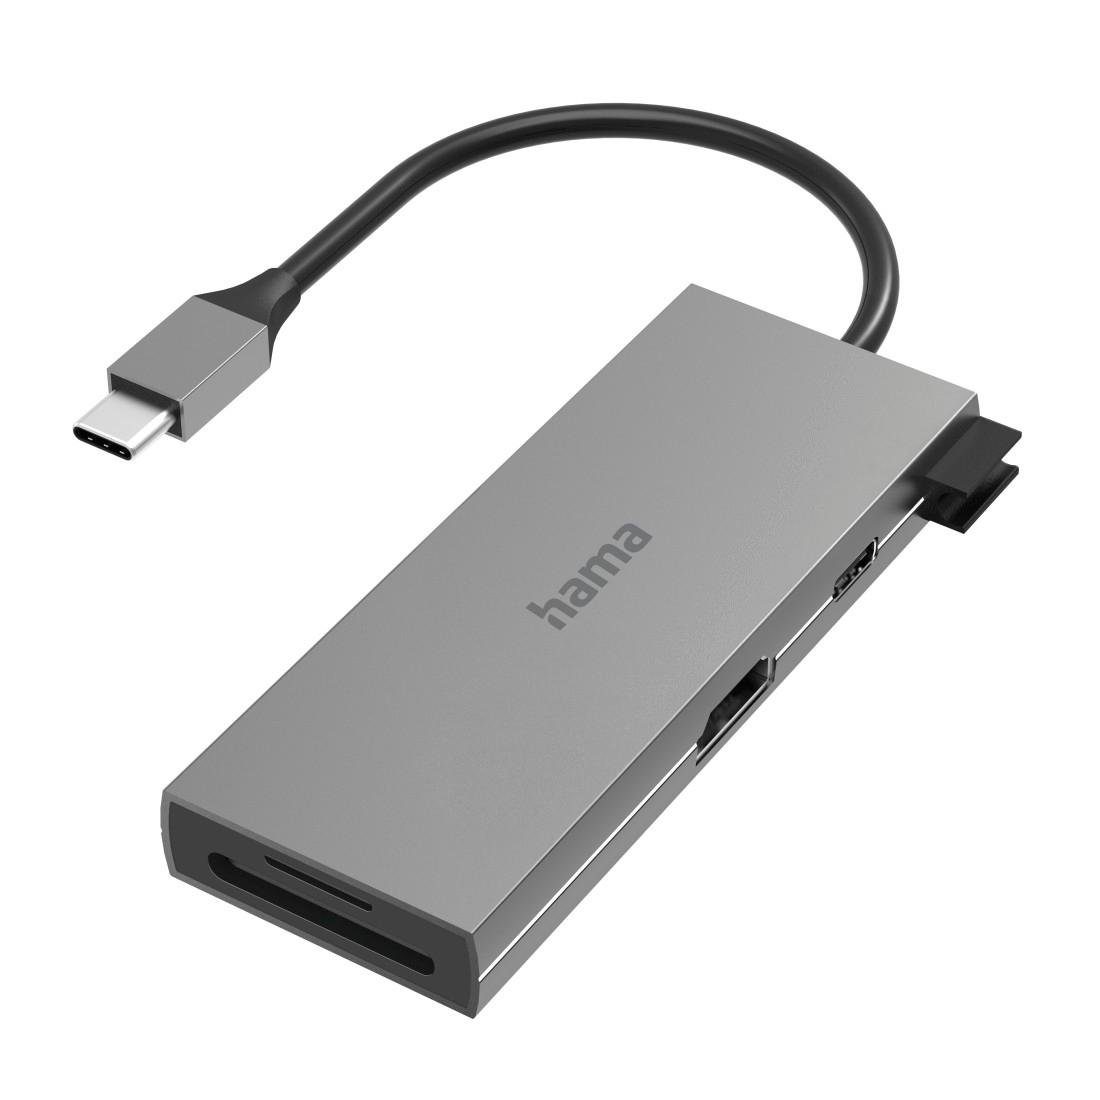 Hama USB-C Multiport Hub Laptop mit 6 Ports, USB-A, USB-C, HDMI, SD microSD USB-Adapter USB-C zu HDMI, SD-Card, USB Typ A, USB Typ C, 15 cm, Laptop Dockingstation, kompakt, robustes Gehäuse, silberfarben